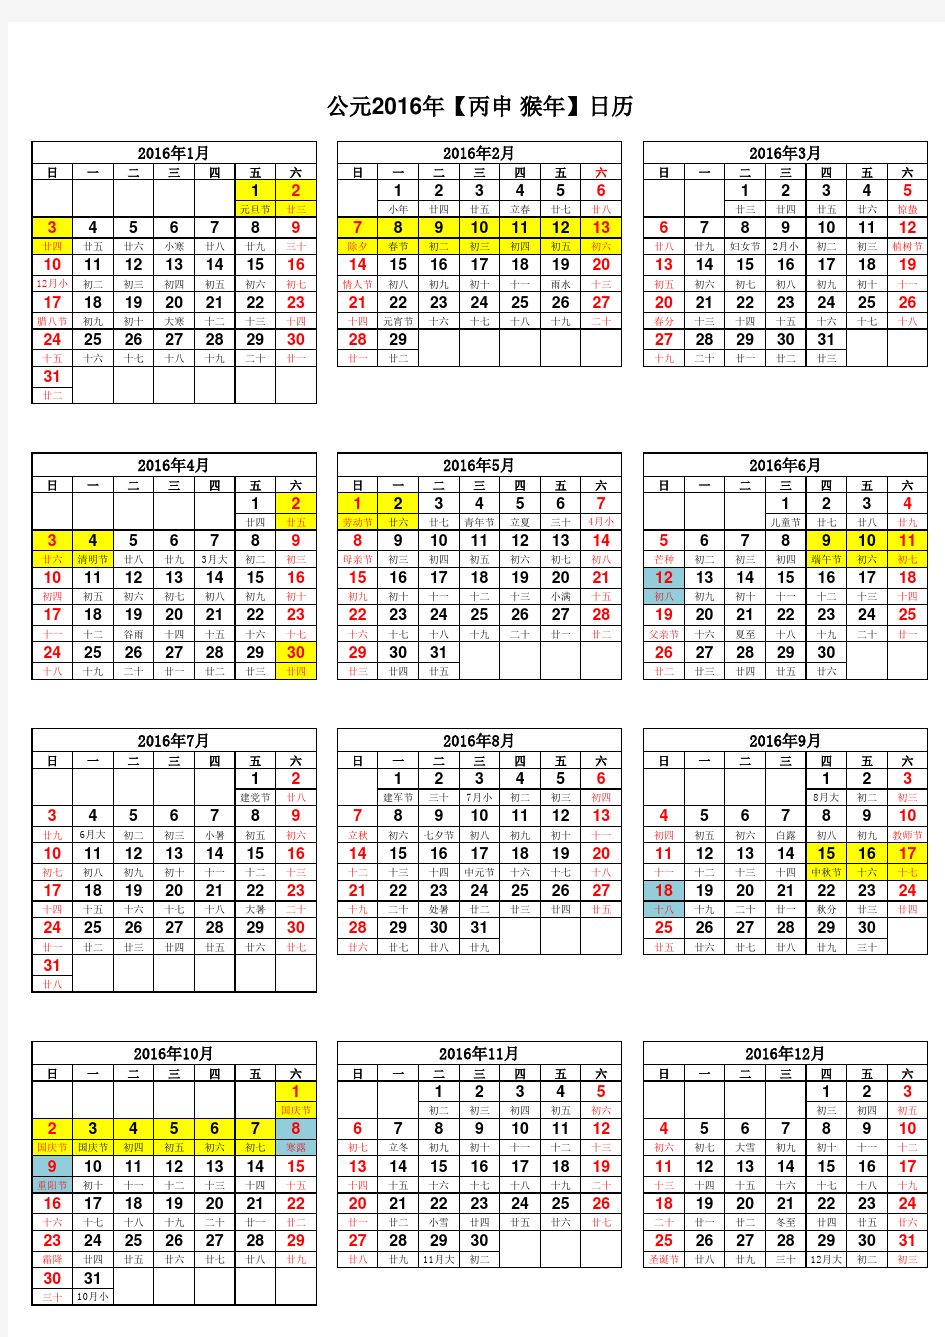 2016年日历表(标注节假日和补班日)